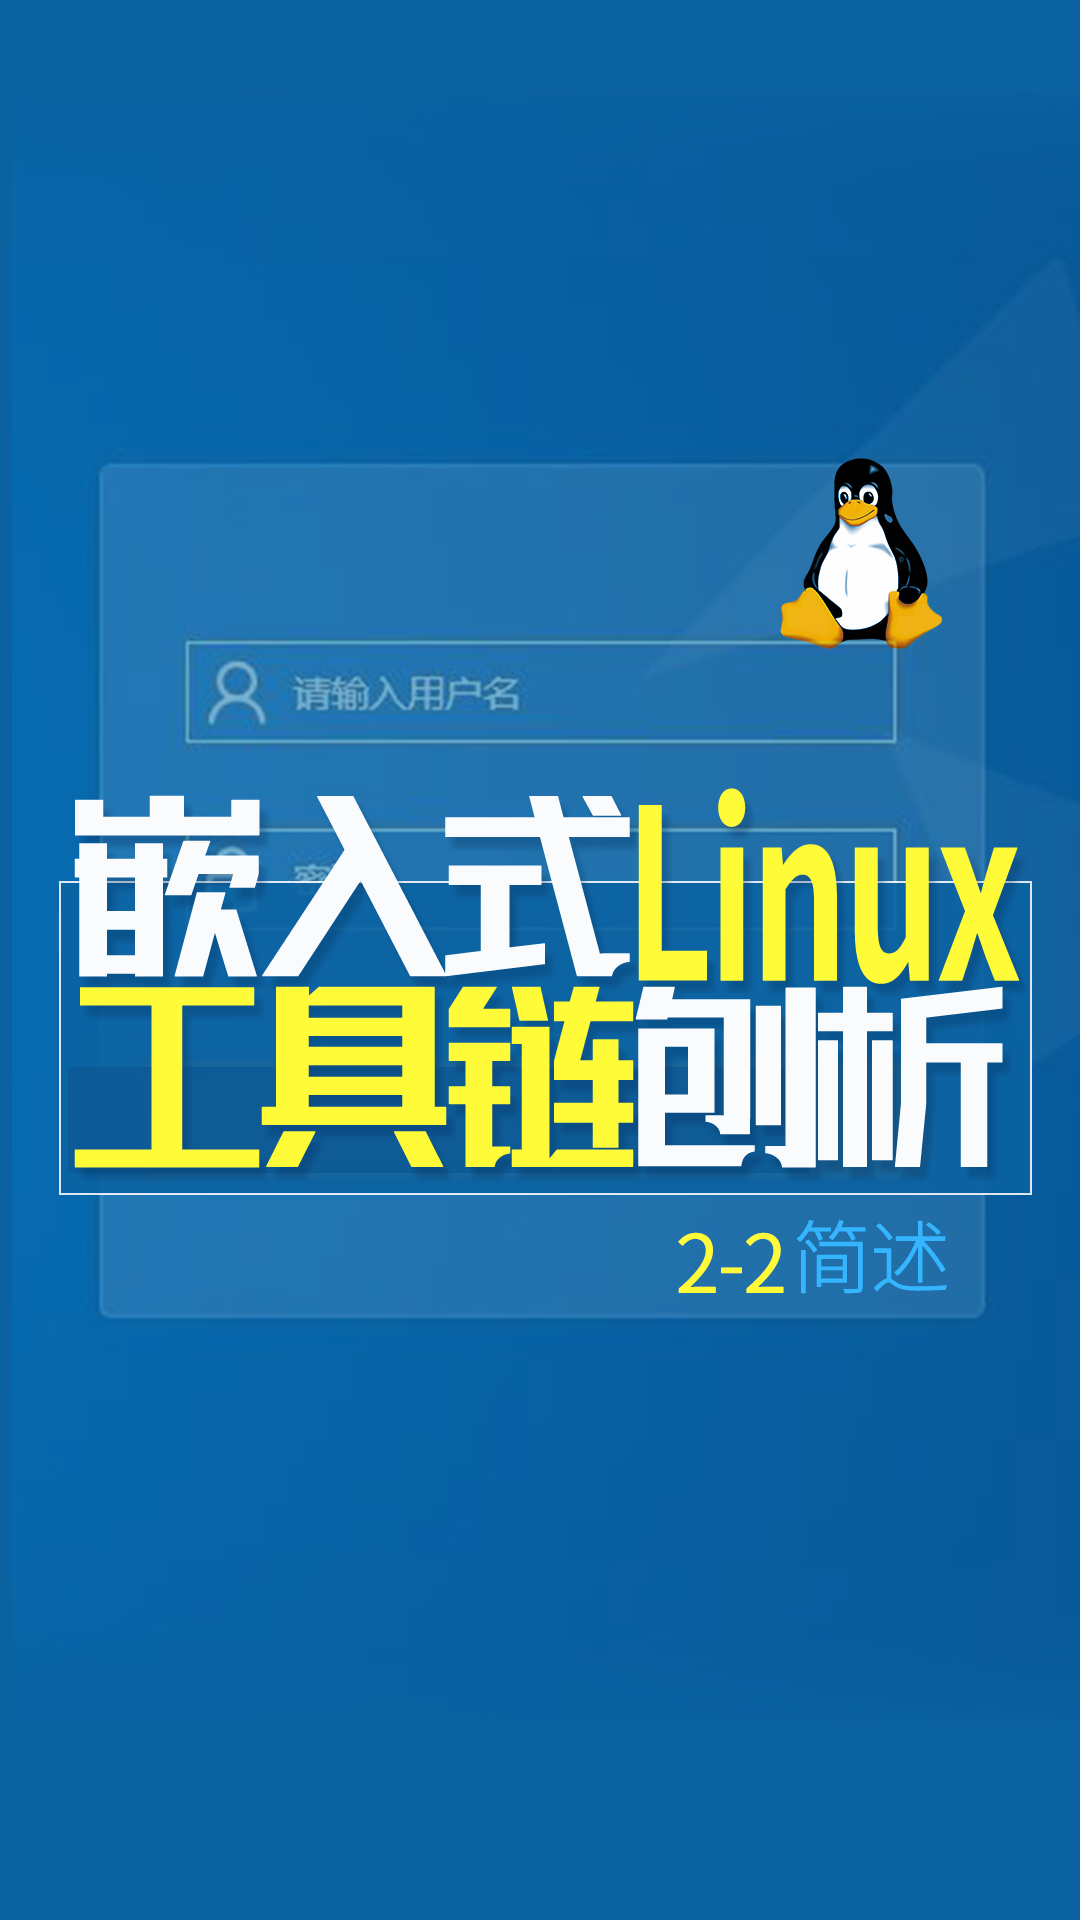 嵌入式Linux工具链刨析-简述2-2#嵌入式开发 